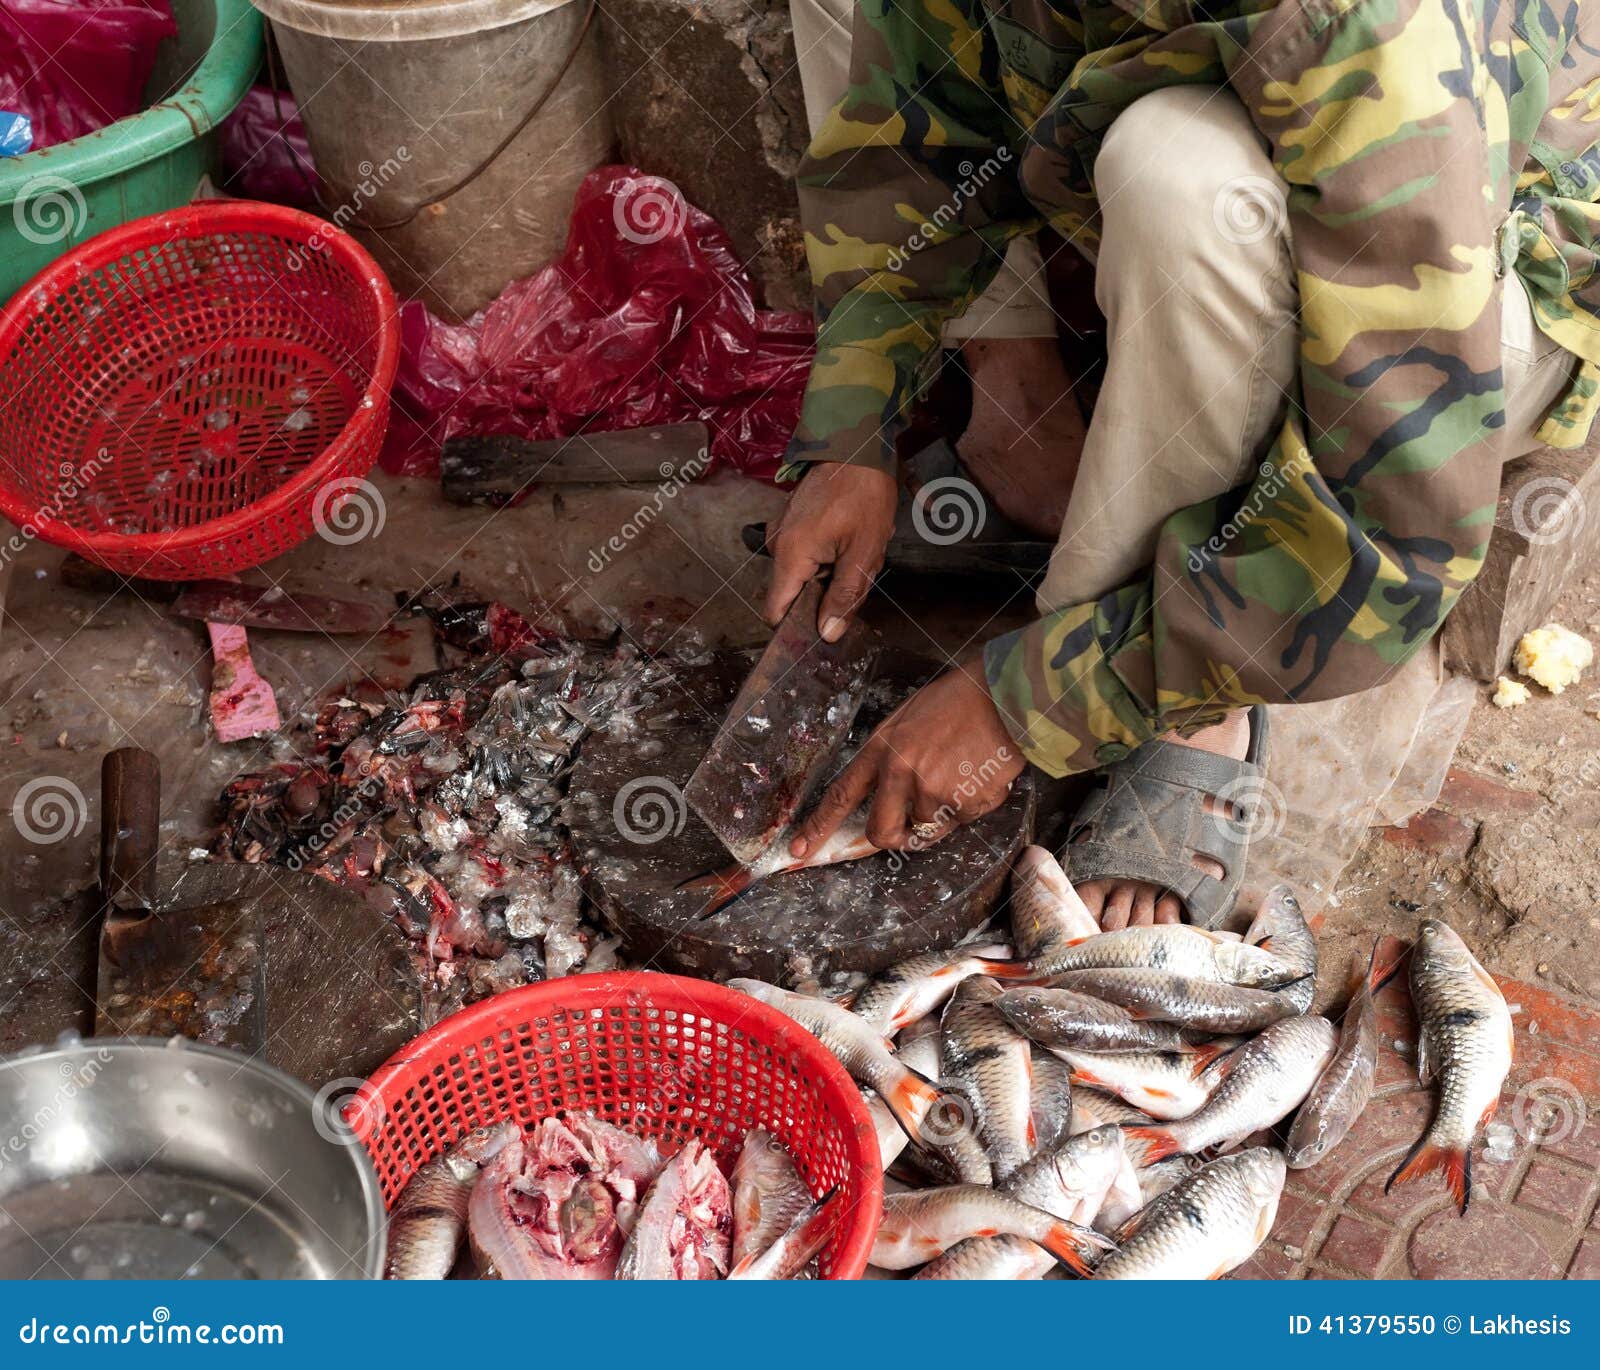 Vendita del pesce al mercato tradizionale del eafood degli asiatici. Vendita del pesce al mercato asiatico tradizionale dei frutti di mare in Siem Reap, la Cambogia